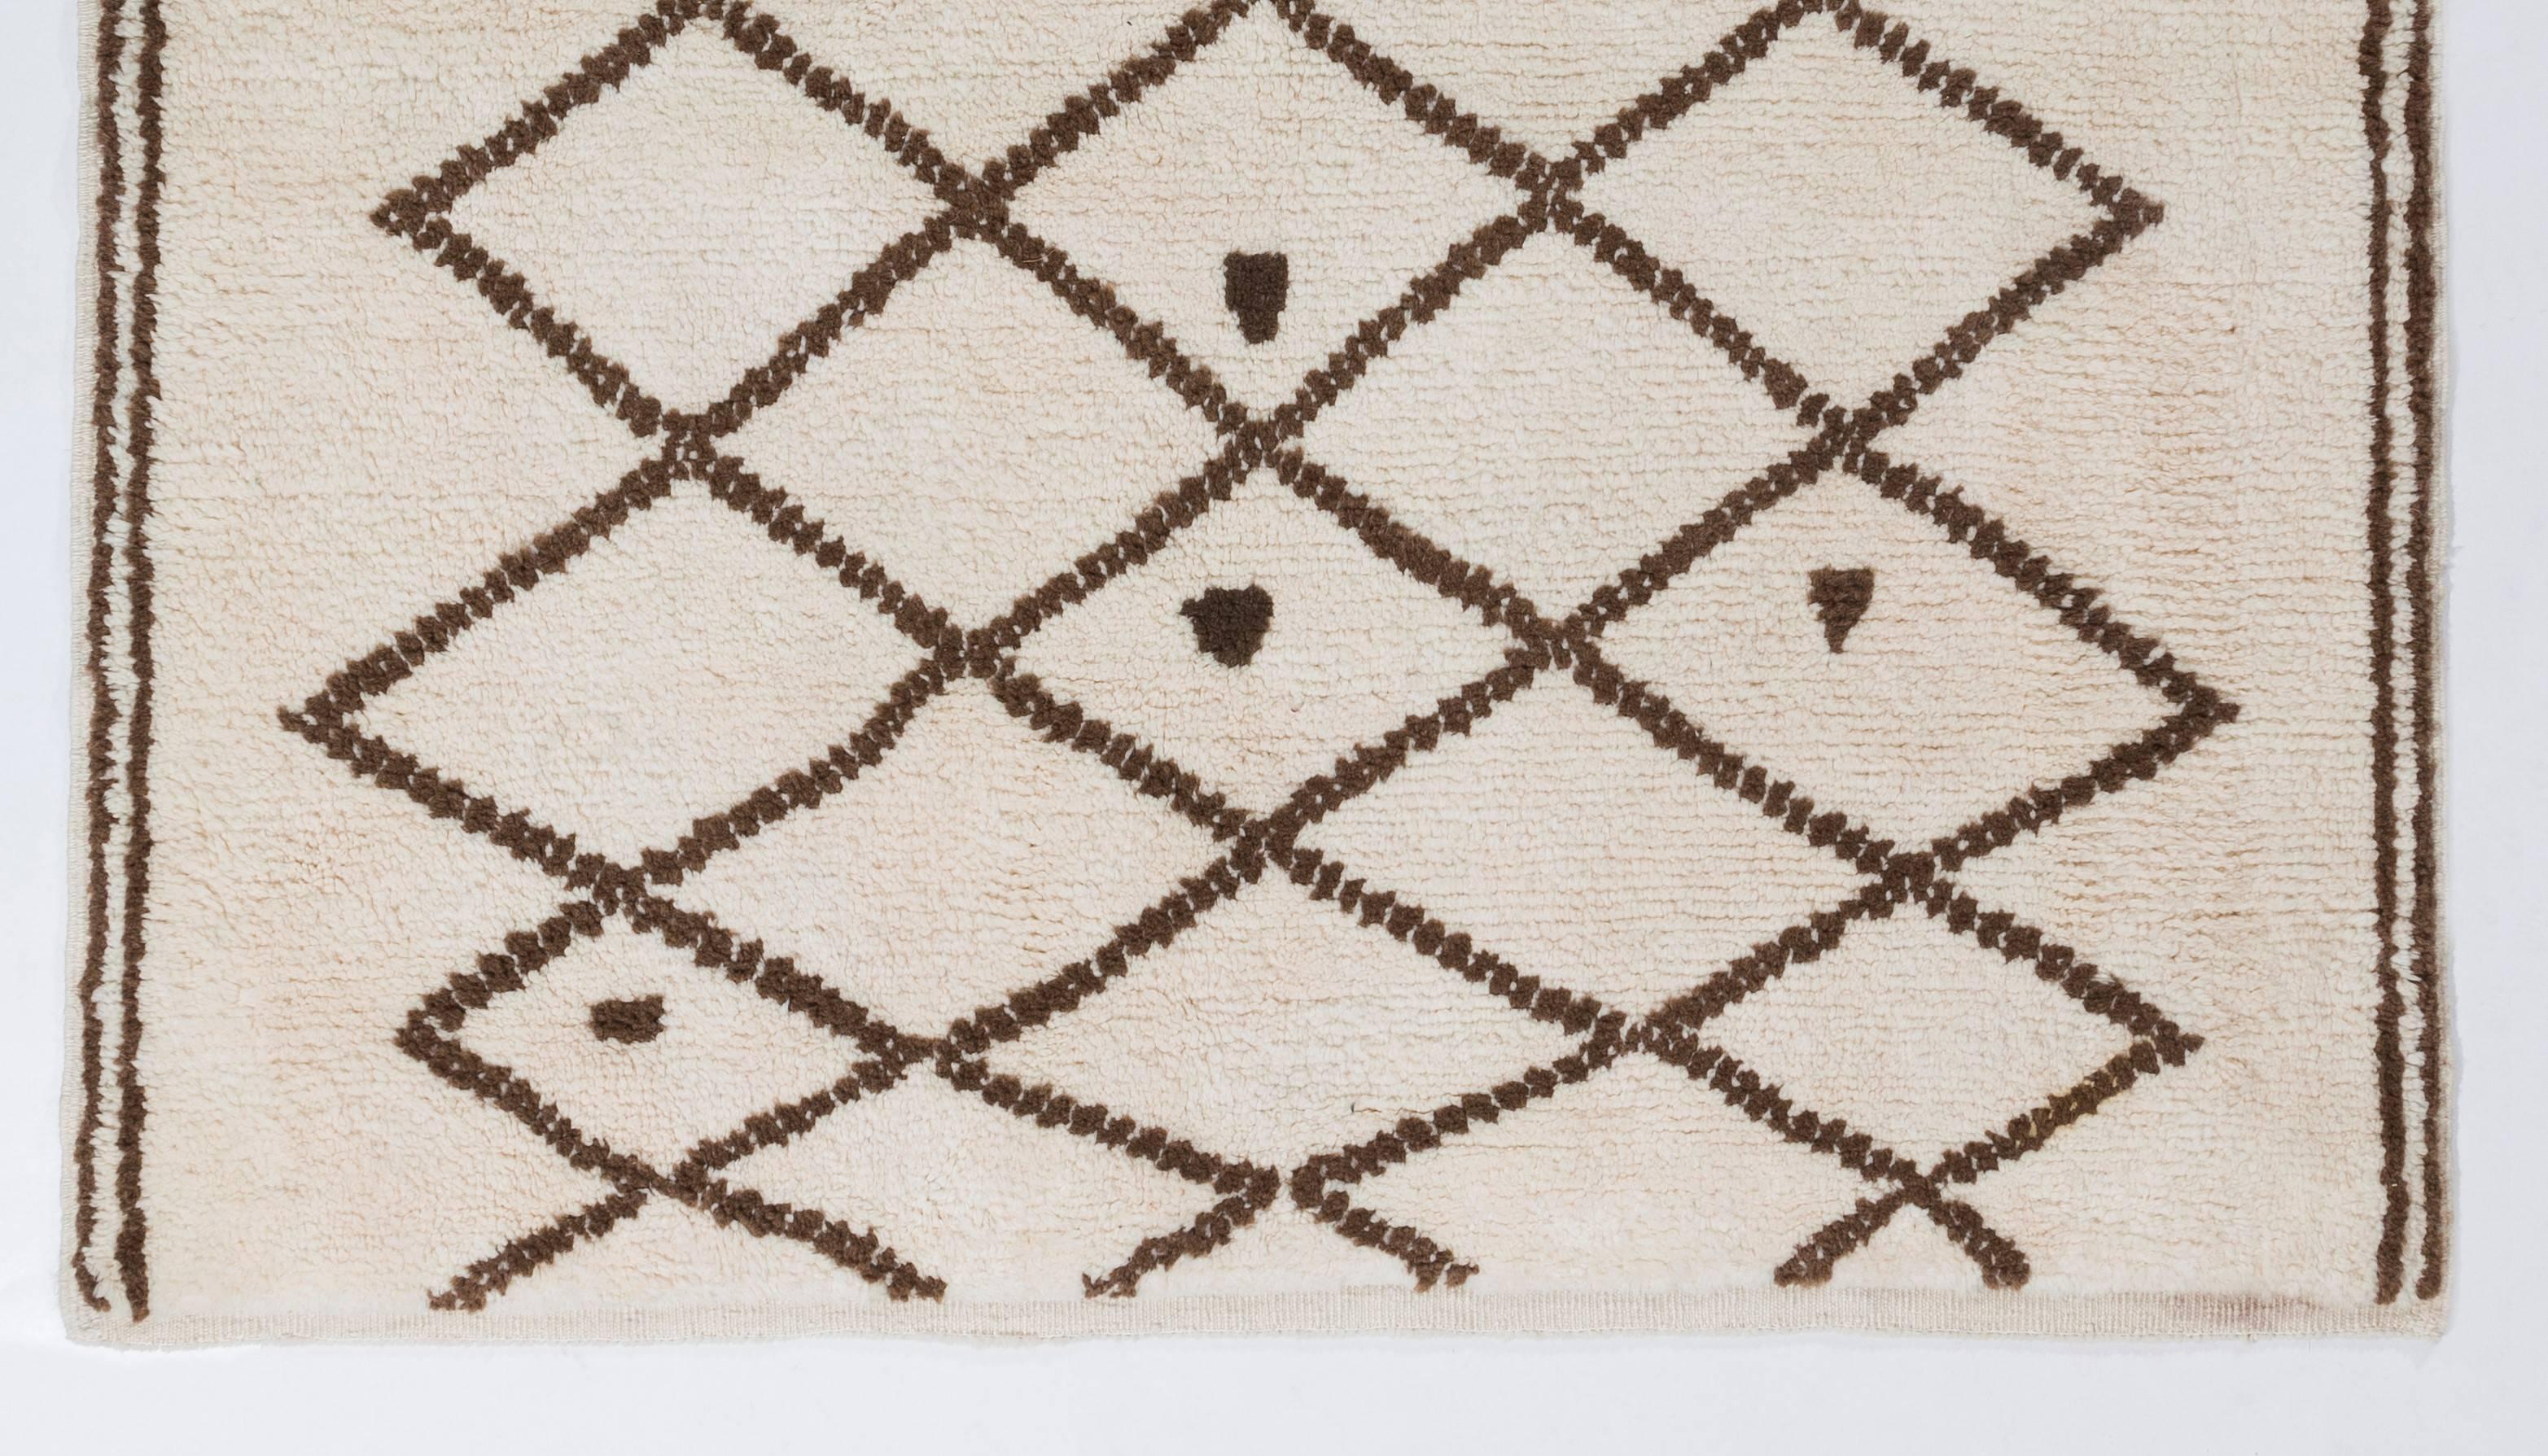 Dieser charmante marokkanische Teppich zeigt ein Gittermuster auf elfenbeinfarbenem Hintergrund. Er besteht vollständig aus ungefärbter, natürlicher Schafwolle, hat einen üppigen, weichen Flor und fühlt sich unter den Füßen gut an. 

Der Teppich